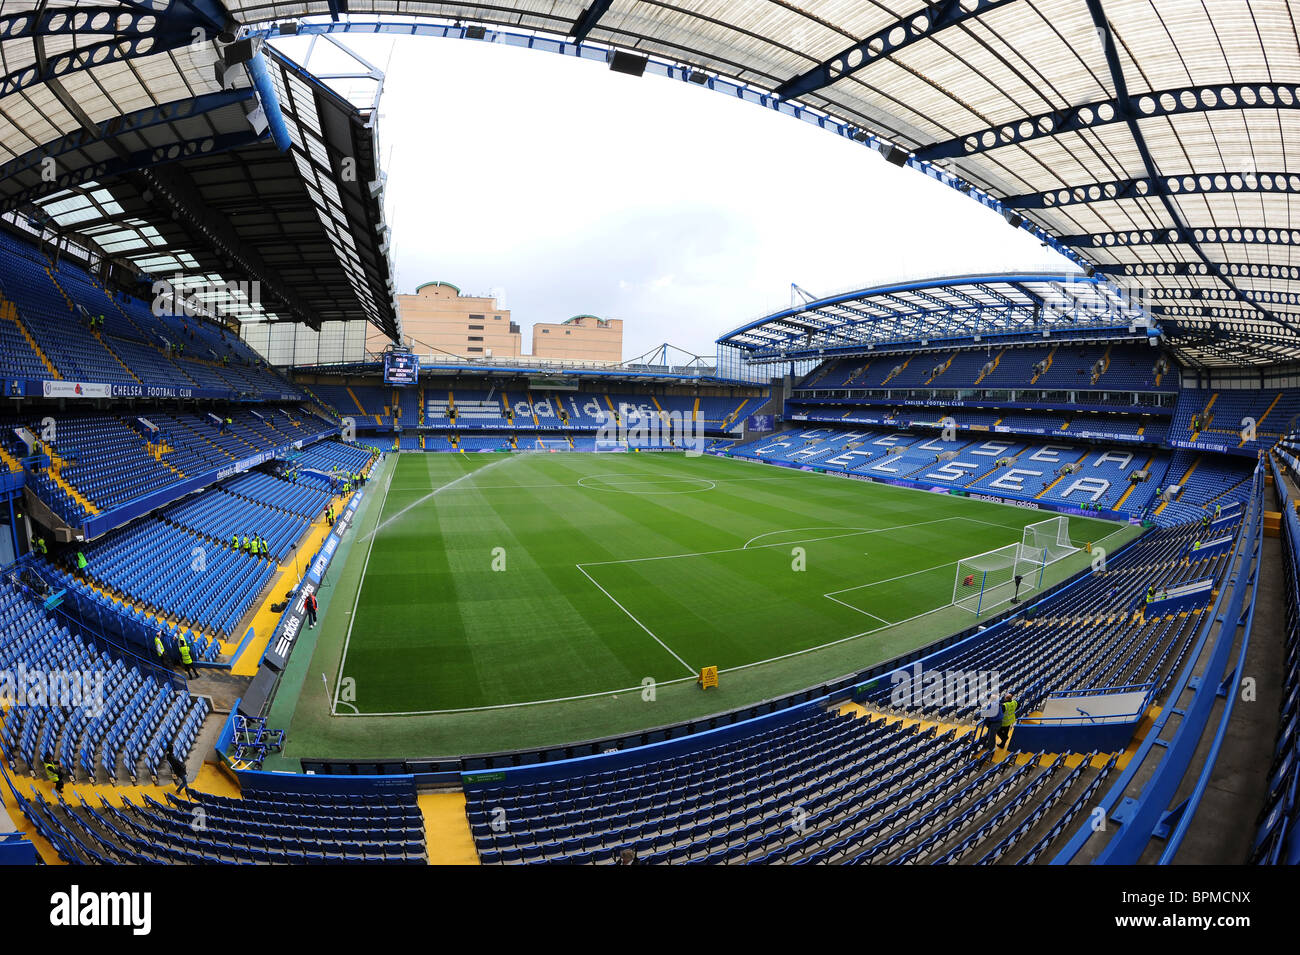 Vue à l'intérieur de stade de Stamford Bridge, Londres. Accueil de Chelsea Football Club Banque D'Images